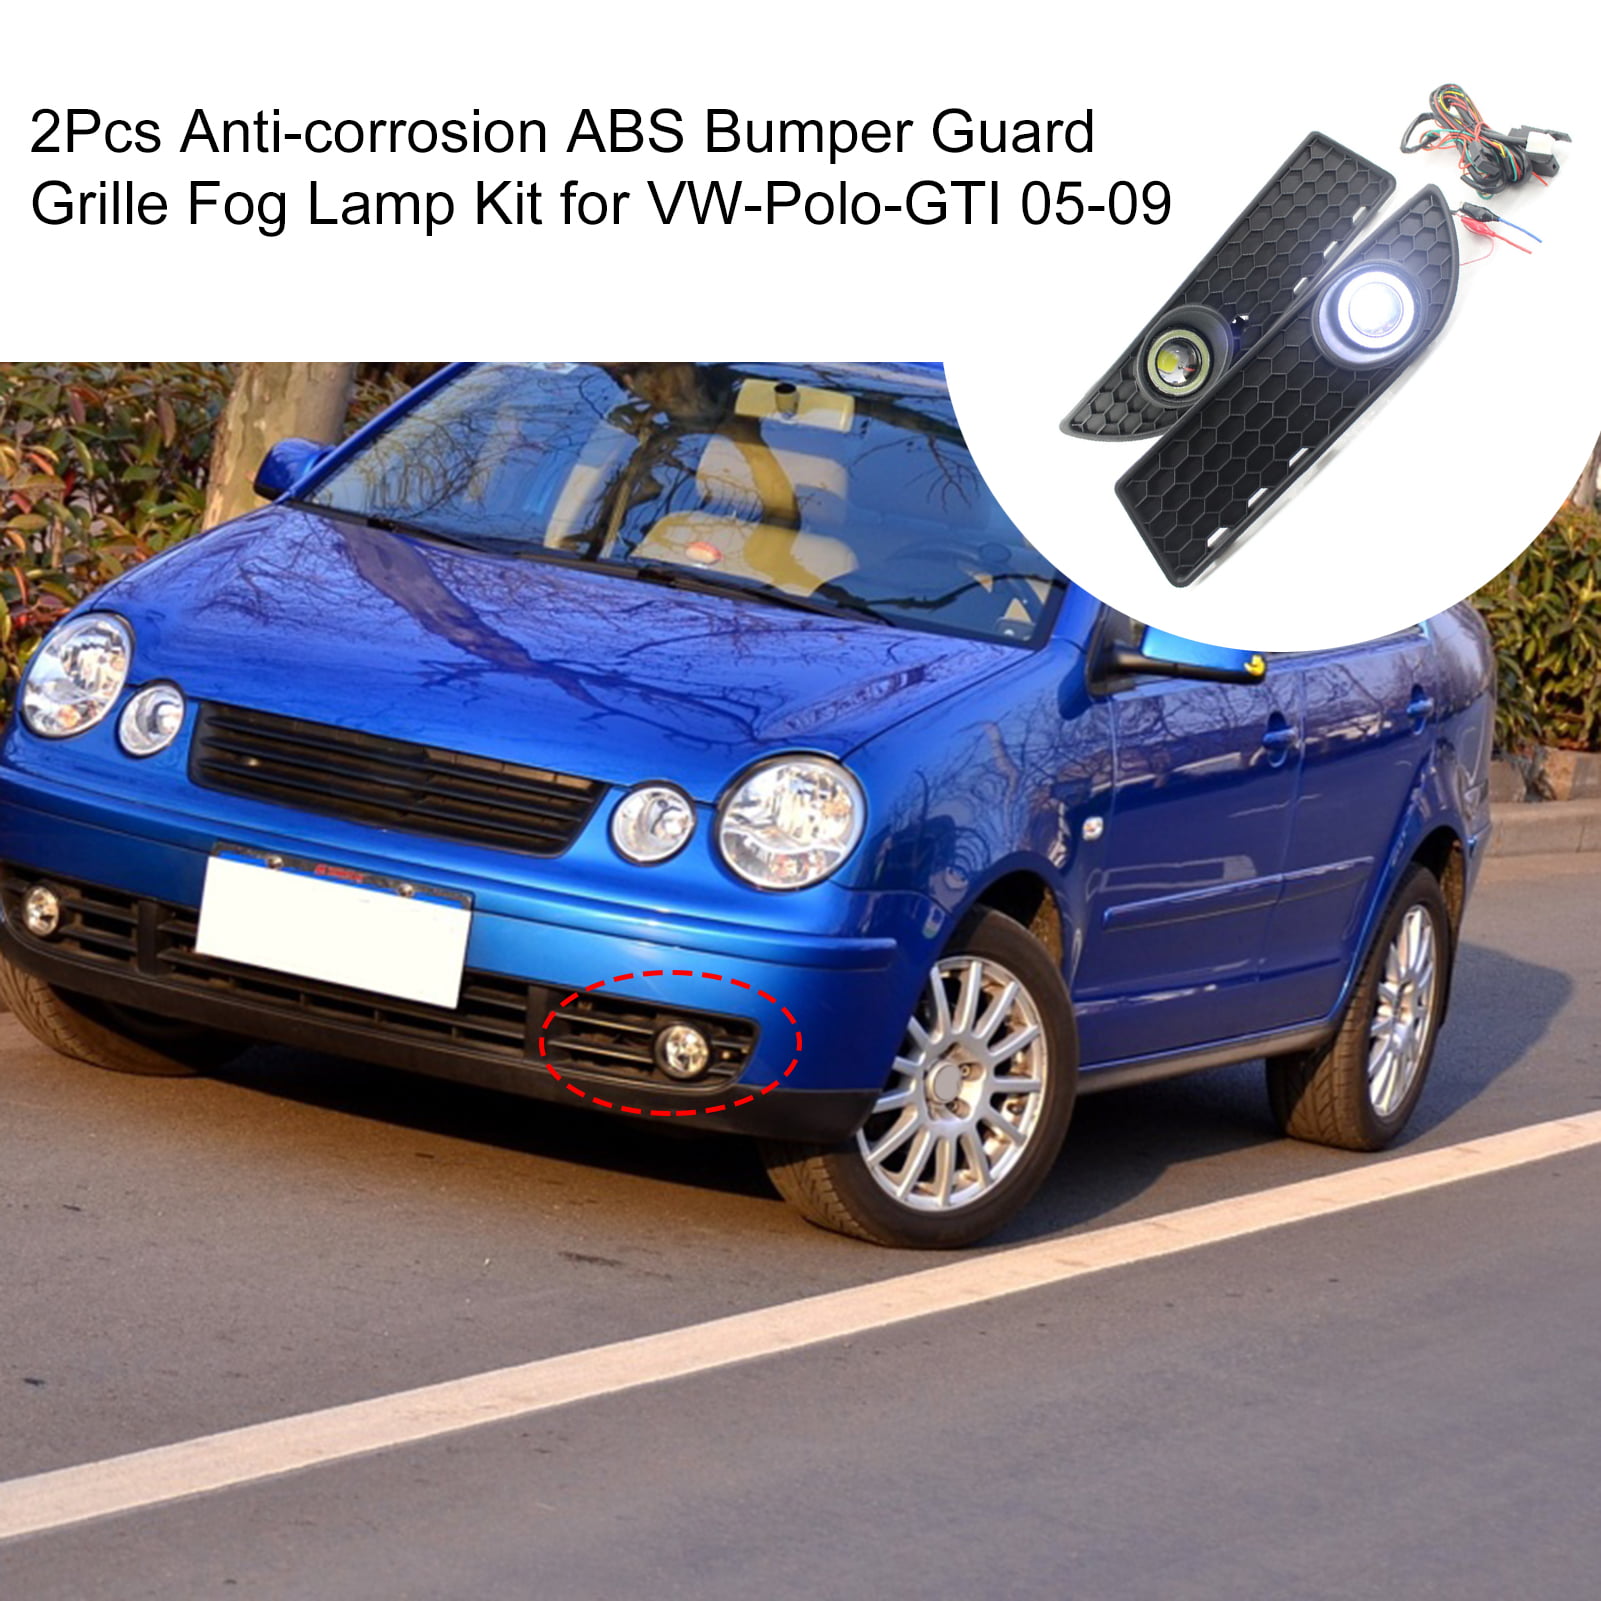 et eller andet sted modtage Bevægelig GWONG 2Pcs Anti-corrosion ABS Bumper Guard Grille Fog Lamp Kit for VW-Polo-GTI  05-09 - Walmart.com